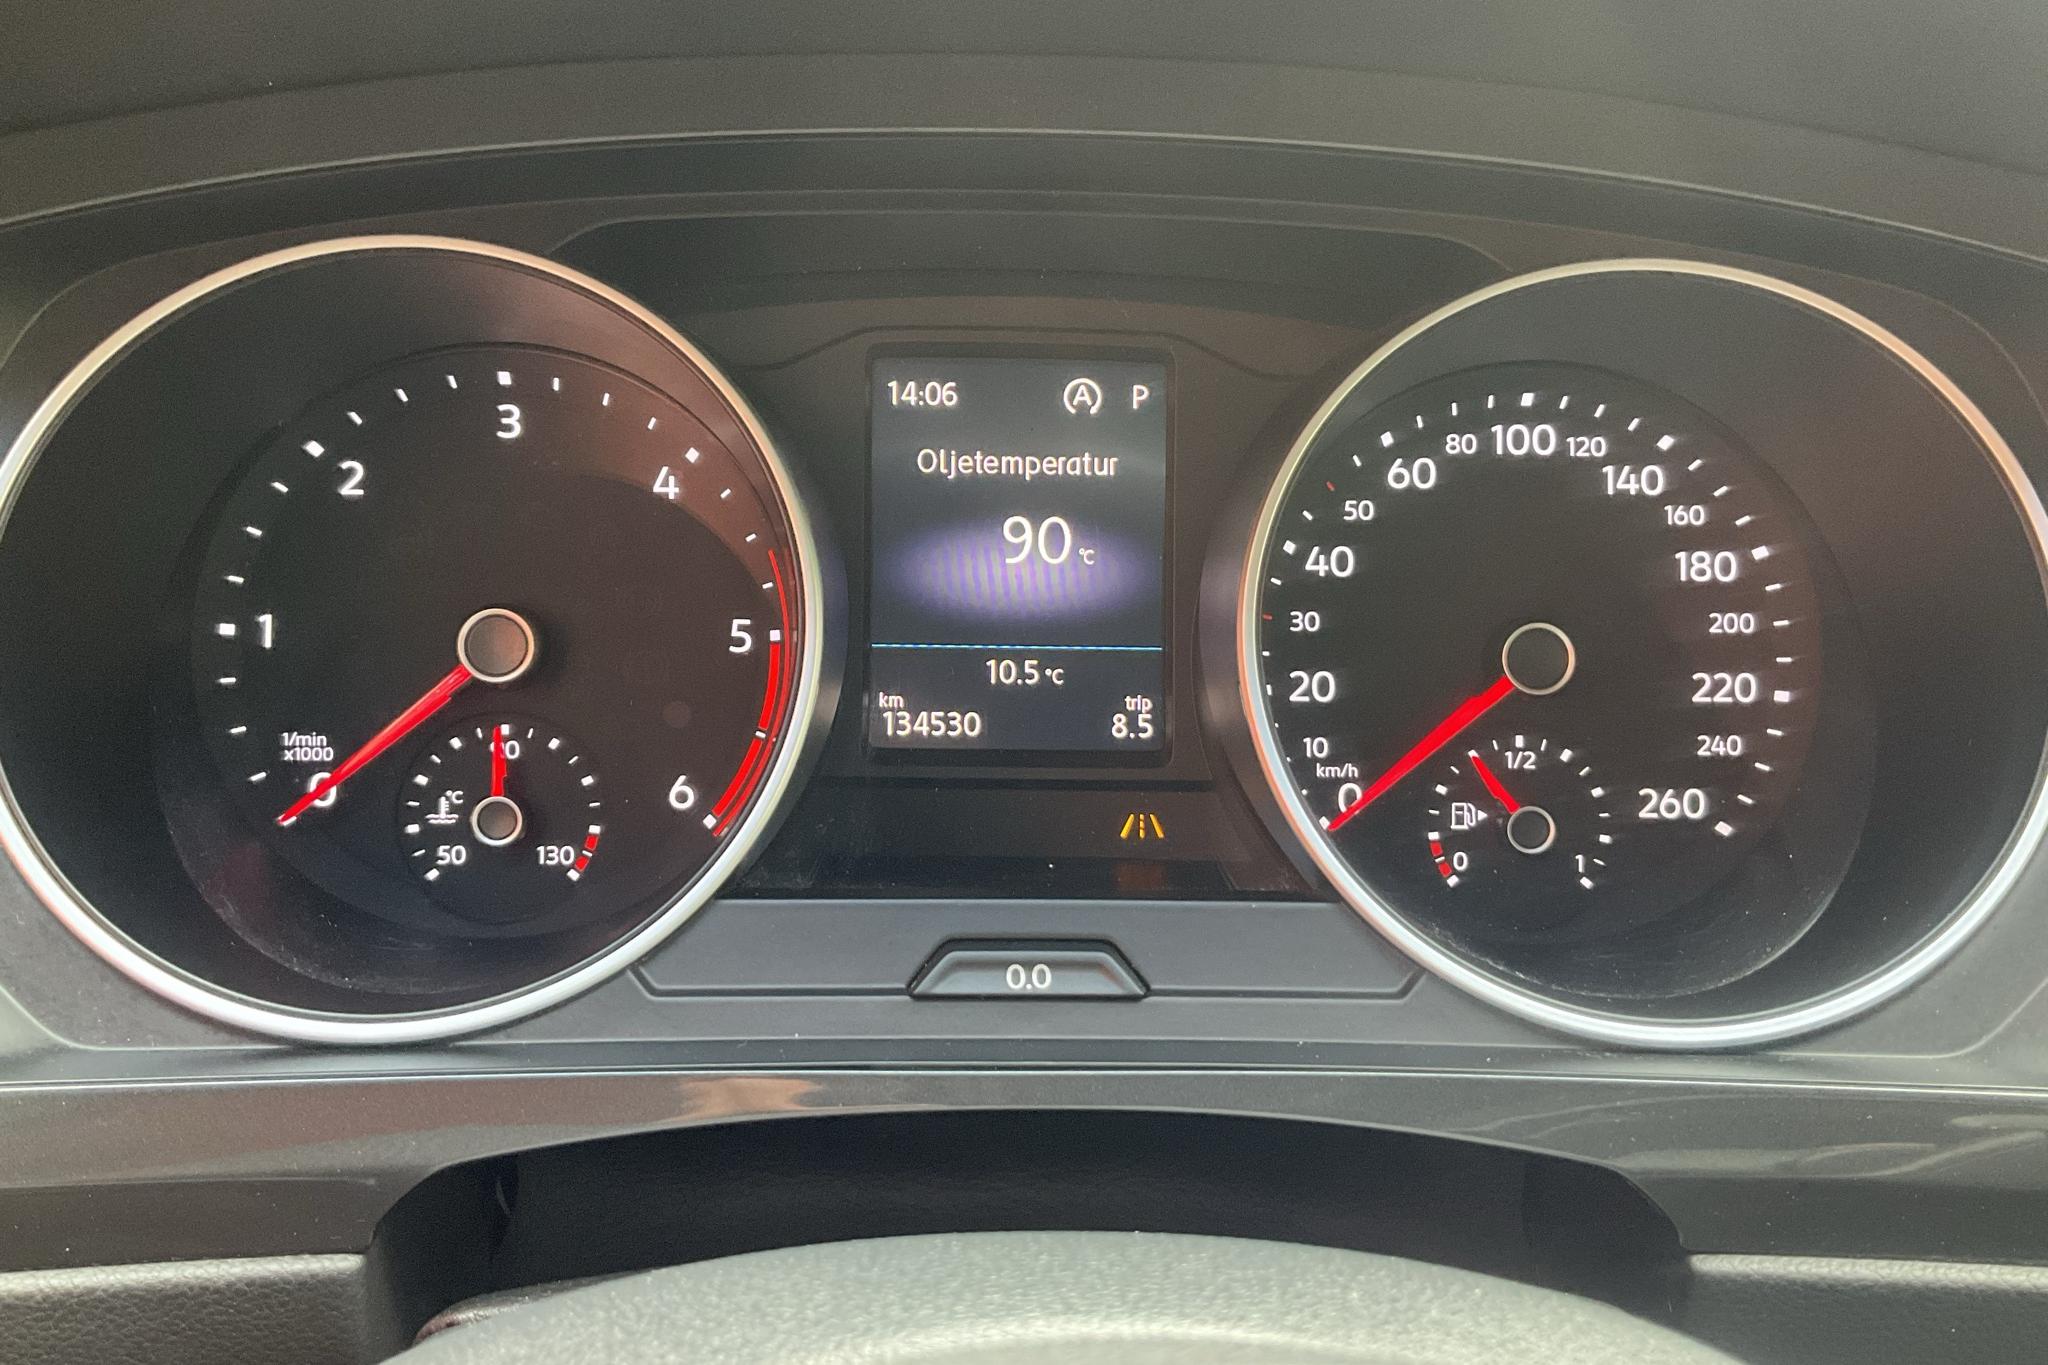 VW Tiguan 2.0 TDI 4MOTION (150hk) - 134 530 km - Automatic - white - 2019